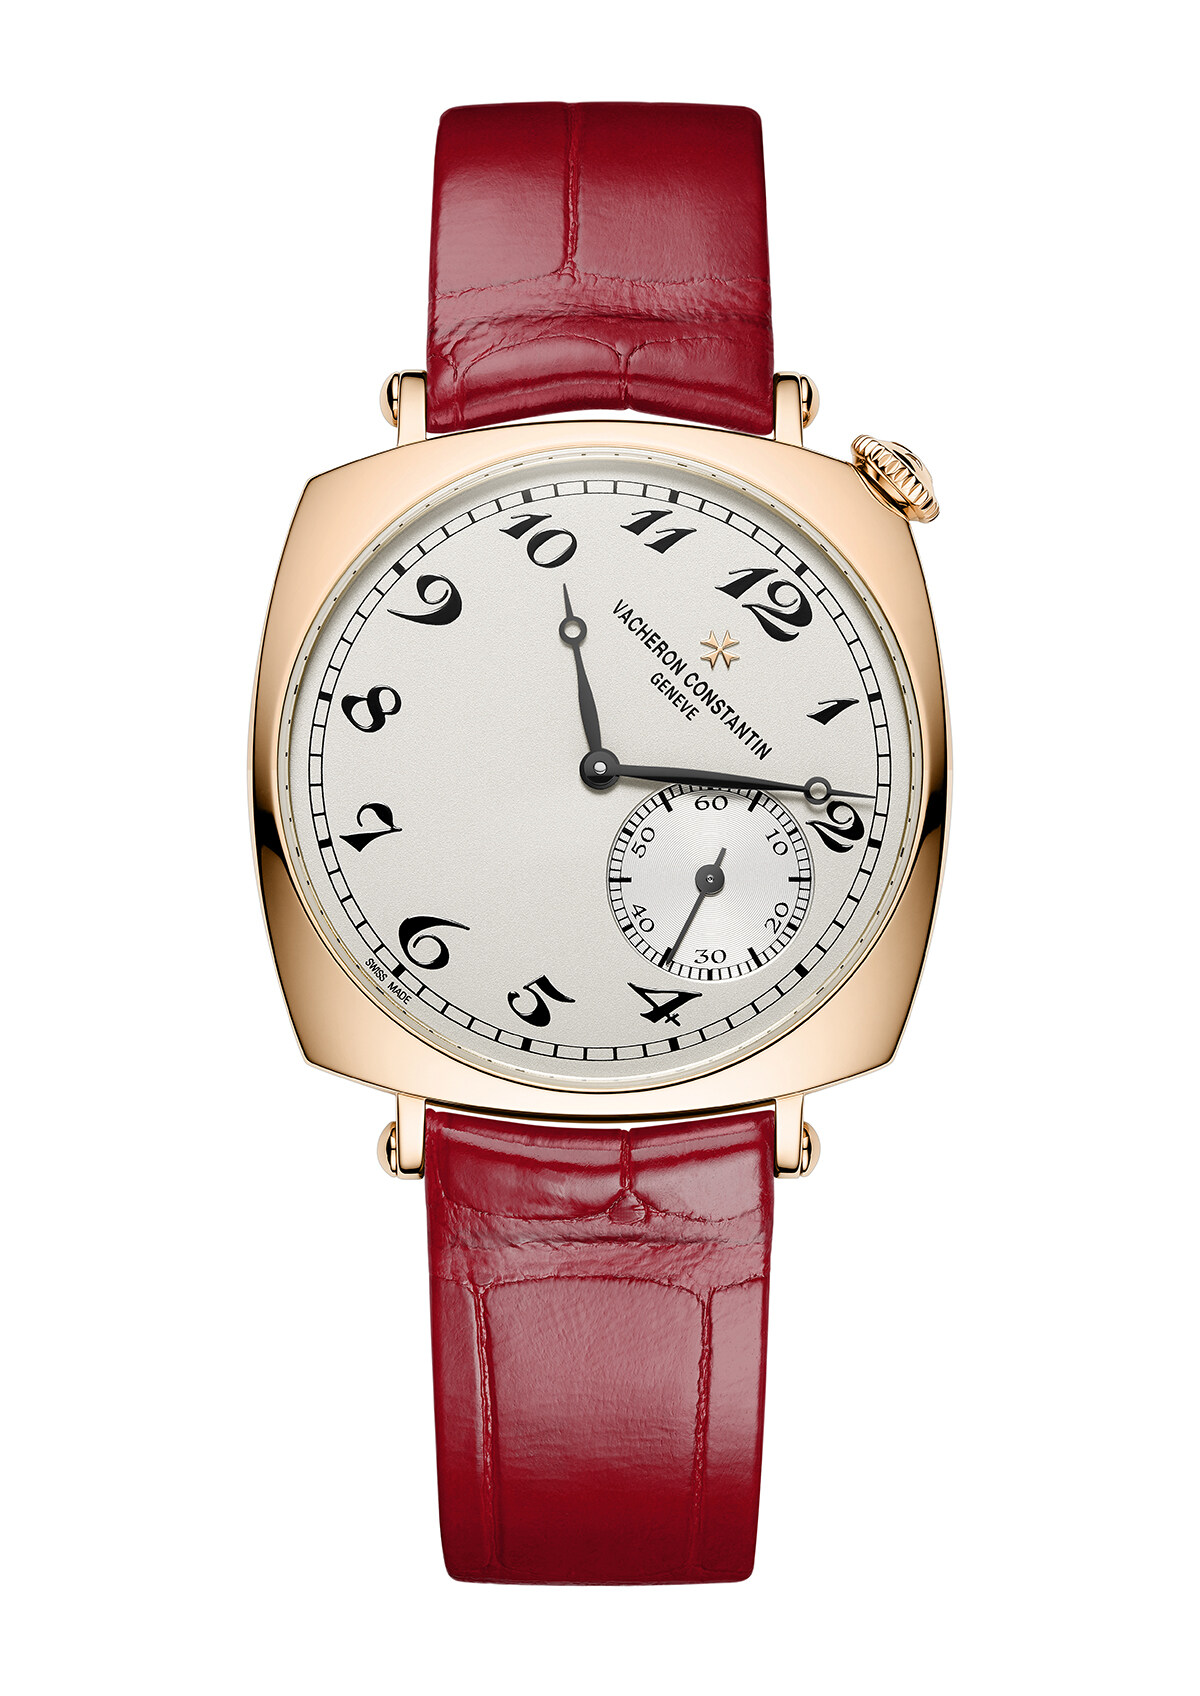 Vacheron Constantin悠久的製錶傳統與歷史，為Egérie系列提供了豐富靈感，同時亦是設計